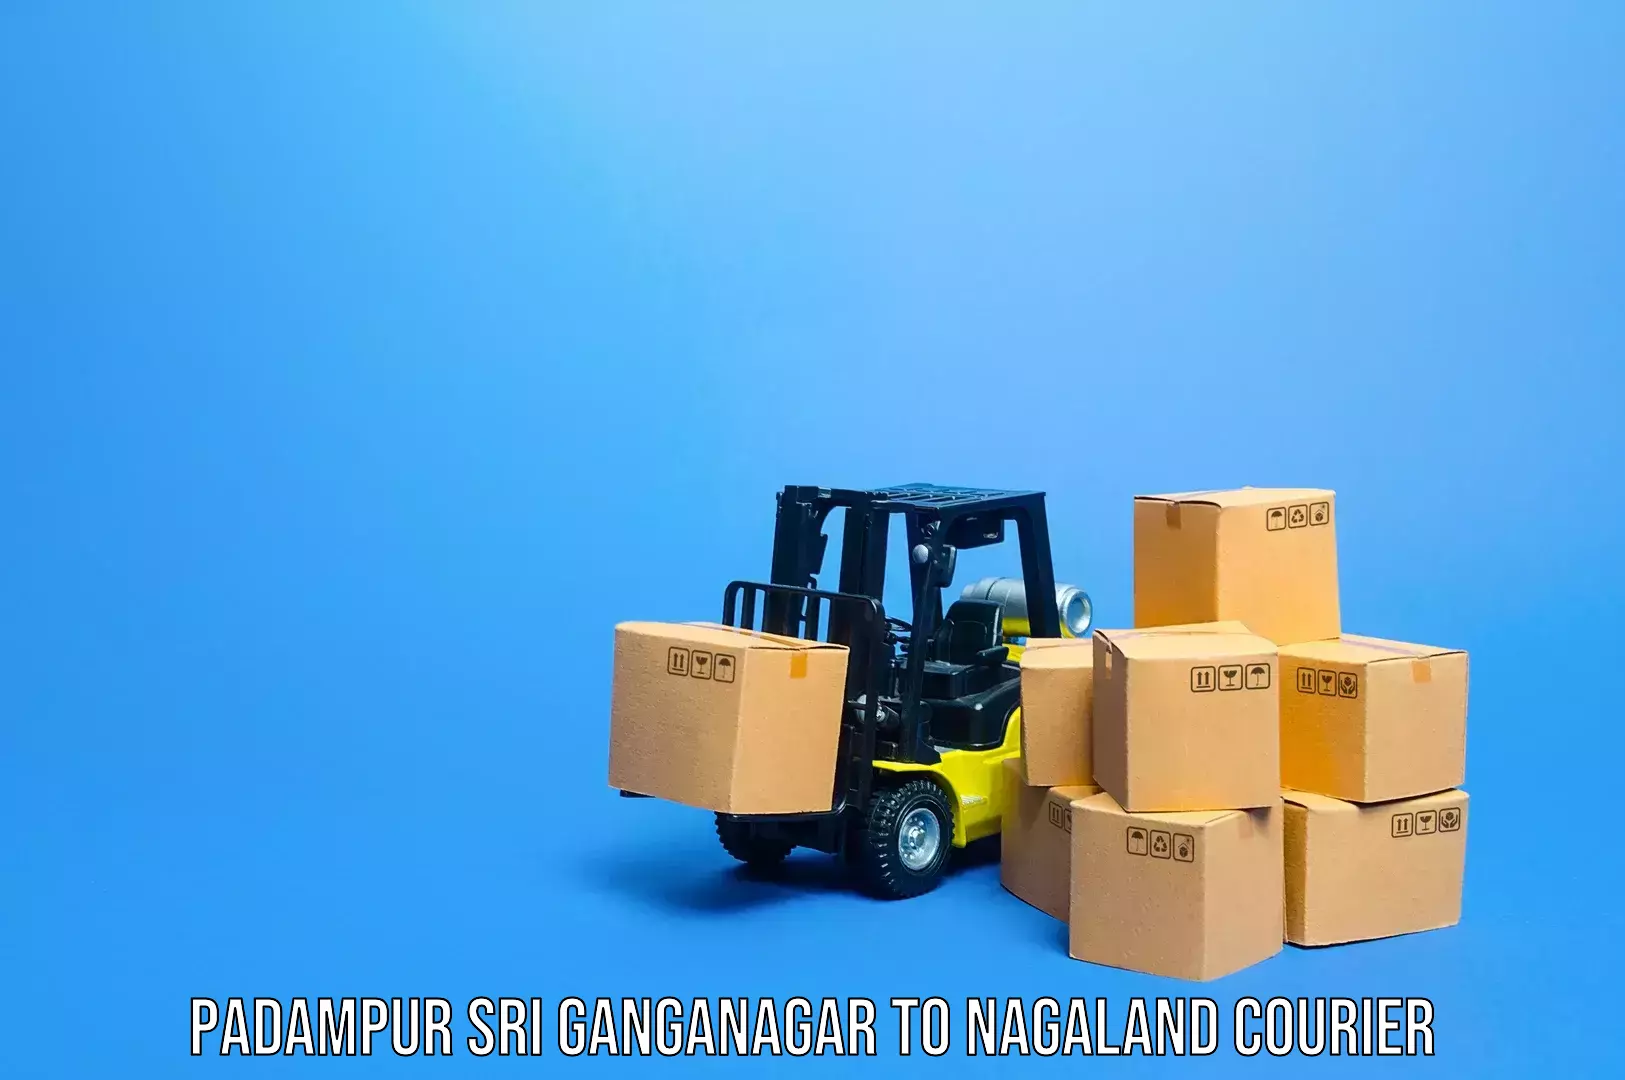 Baggage transport professionals Padampur Sri Ganganagar to Peren